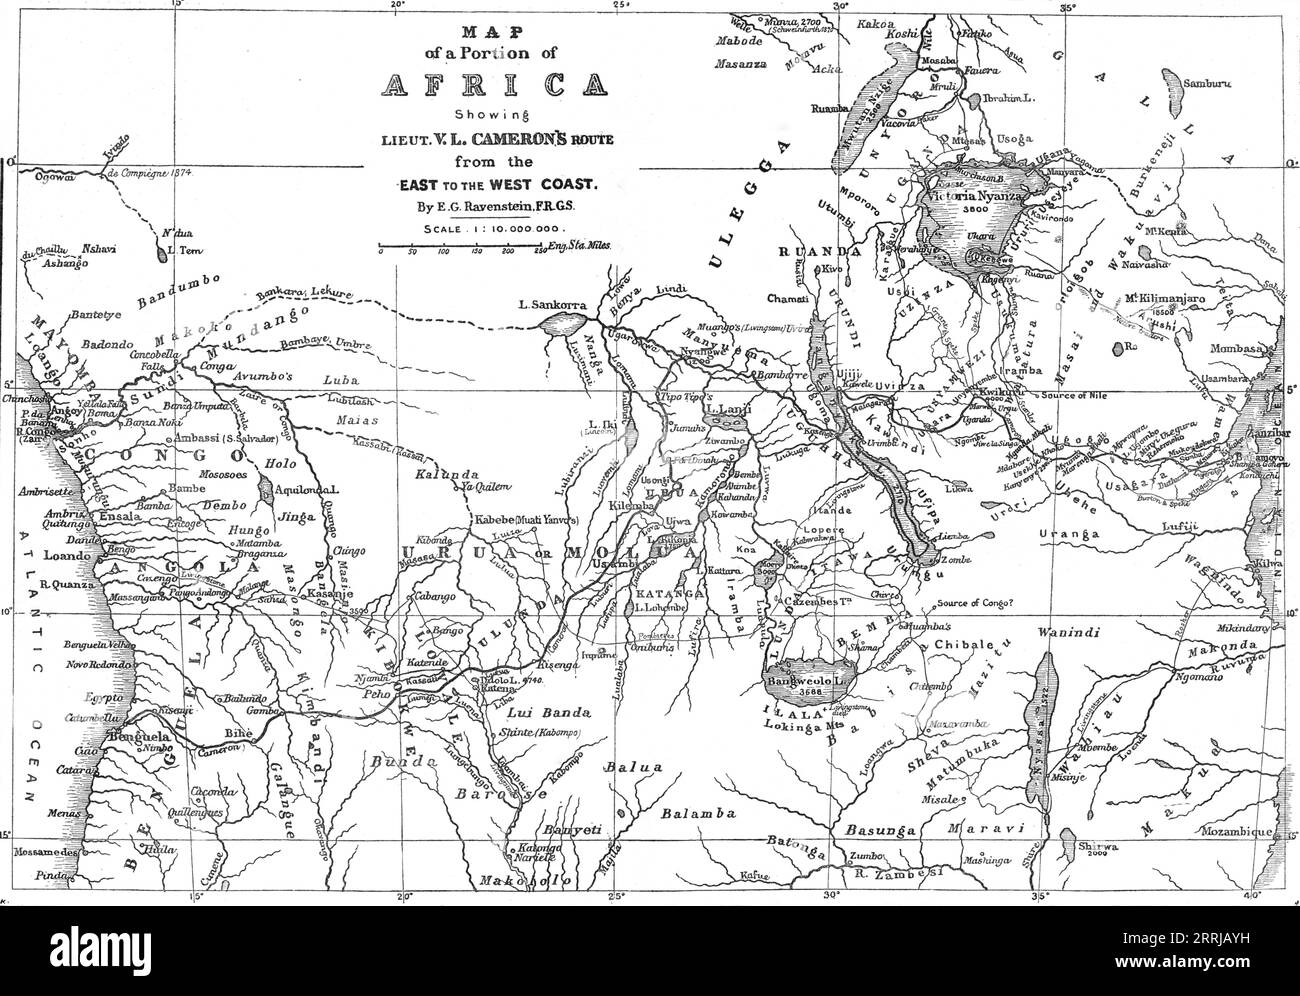 Karte eines Teils Afrikas mit Lieut. V.L. Camerons Route vom Osten zur Westküste, 1876. "Eine Karte der gesamten Breite Afrikas, vom Indischen Ozean bis zum Atlantik... sie zeigt vollständig die afrikanische Seenregion, eines der bemerkenswertesten geografischen Merkmale der Welt... Cameron hat einen dieser Seen, den Tanganjika, die Burton und Speke als erste von der Ostküste aus erreichten, und die nördlichen Teile wurden von Livingstone und Stanley befahren. Er hat außerdem gezeigt, dass diese Tanganjika einen Fluss nach Westen ableitet und damit die Siedlung der besiedelt hat Stockfoto